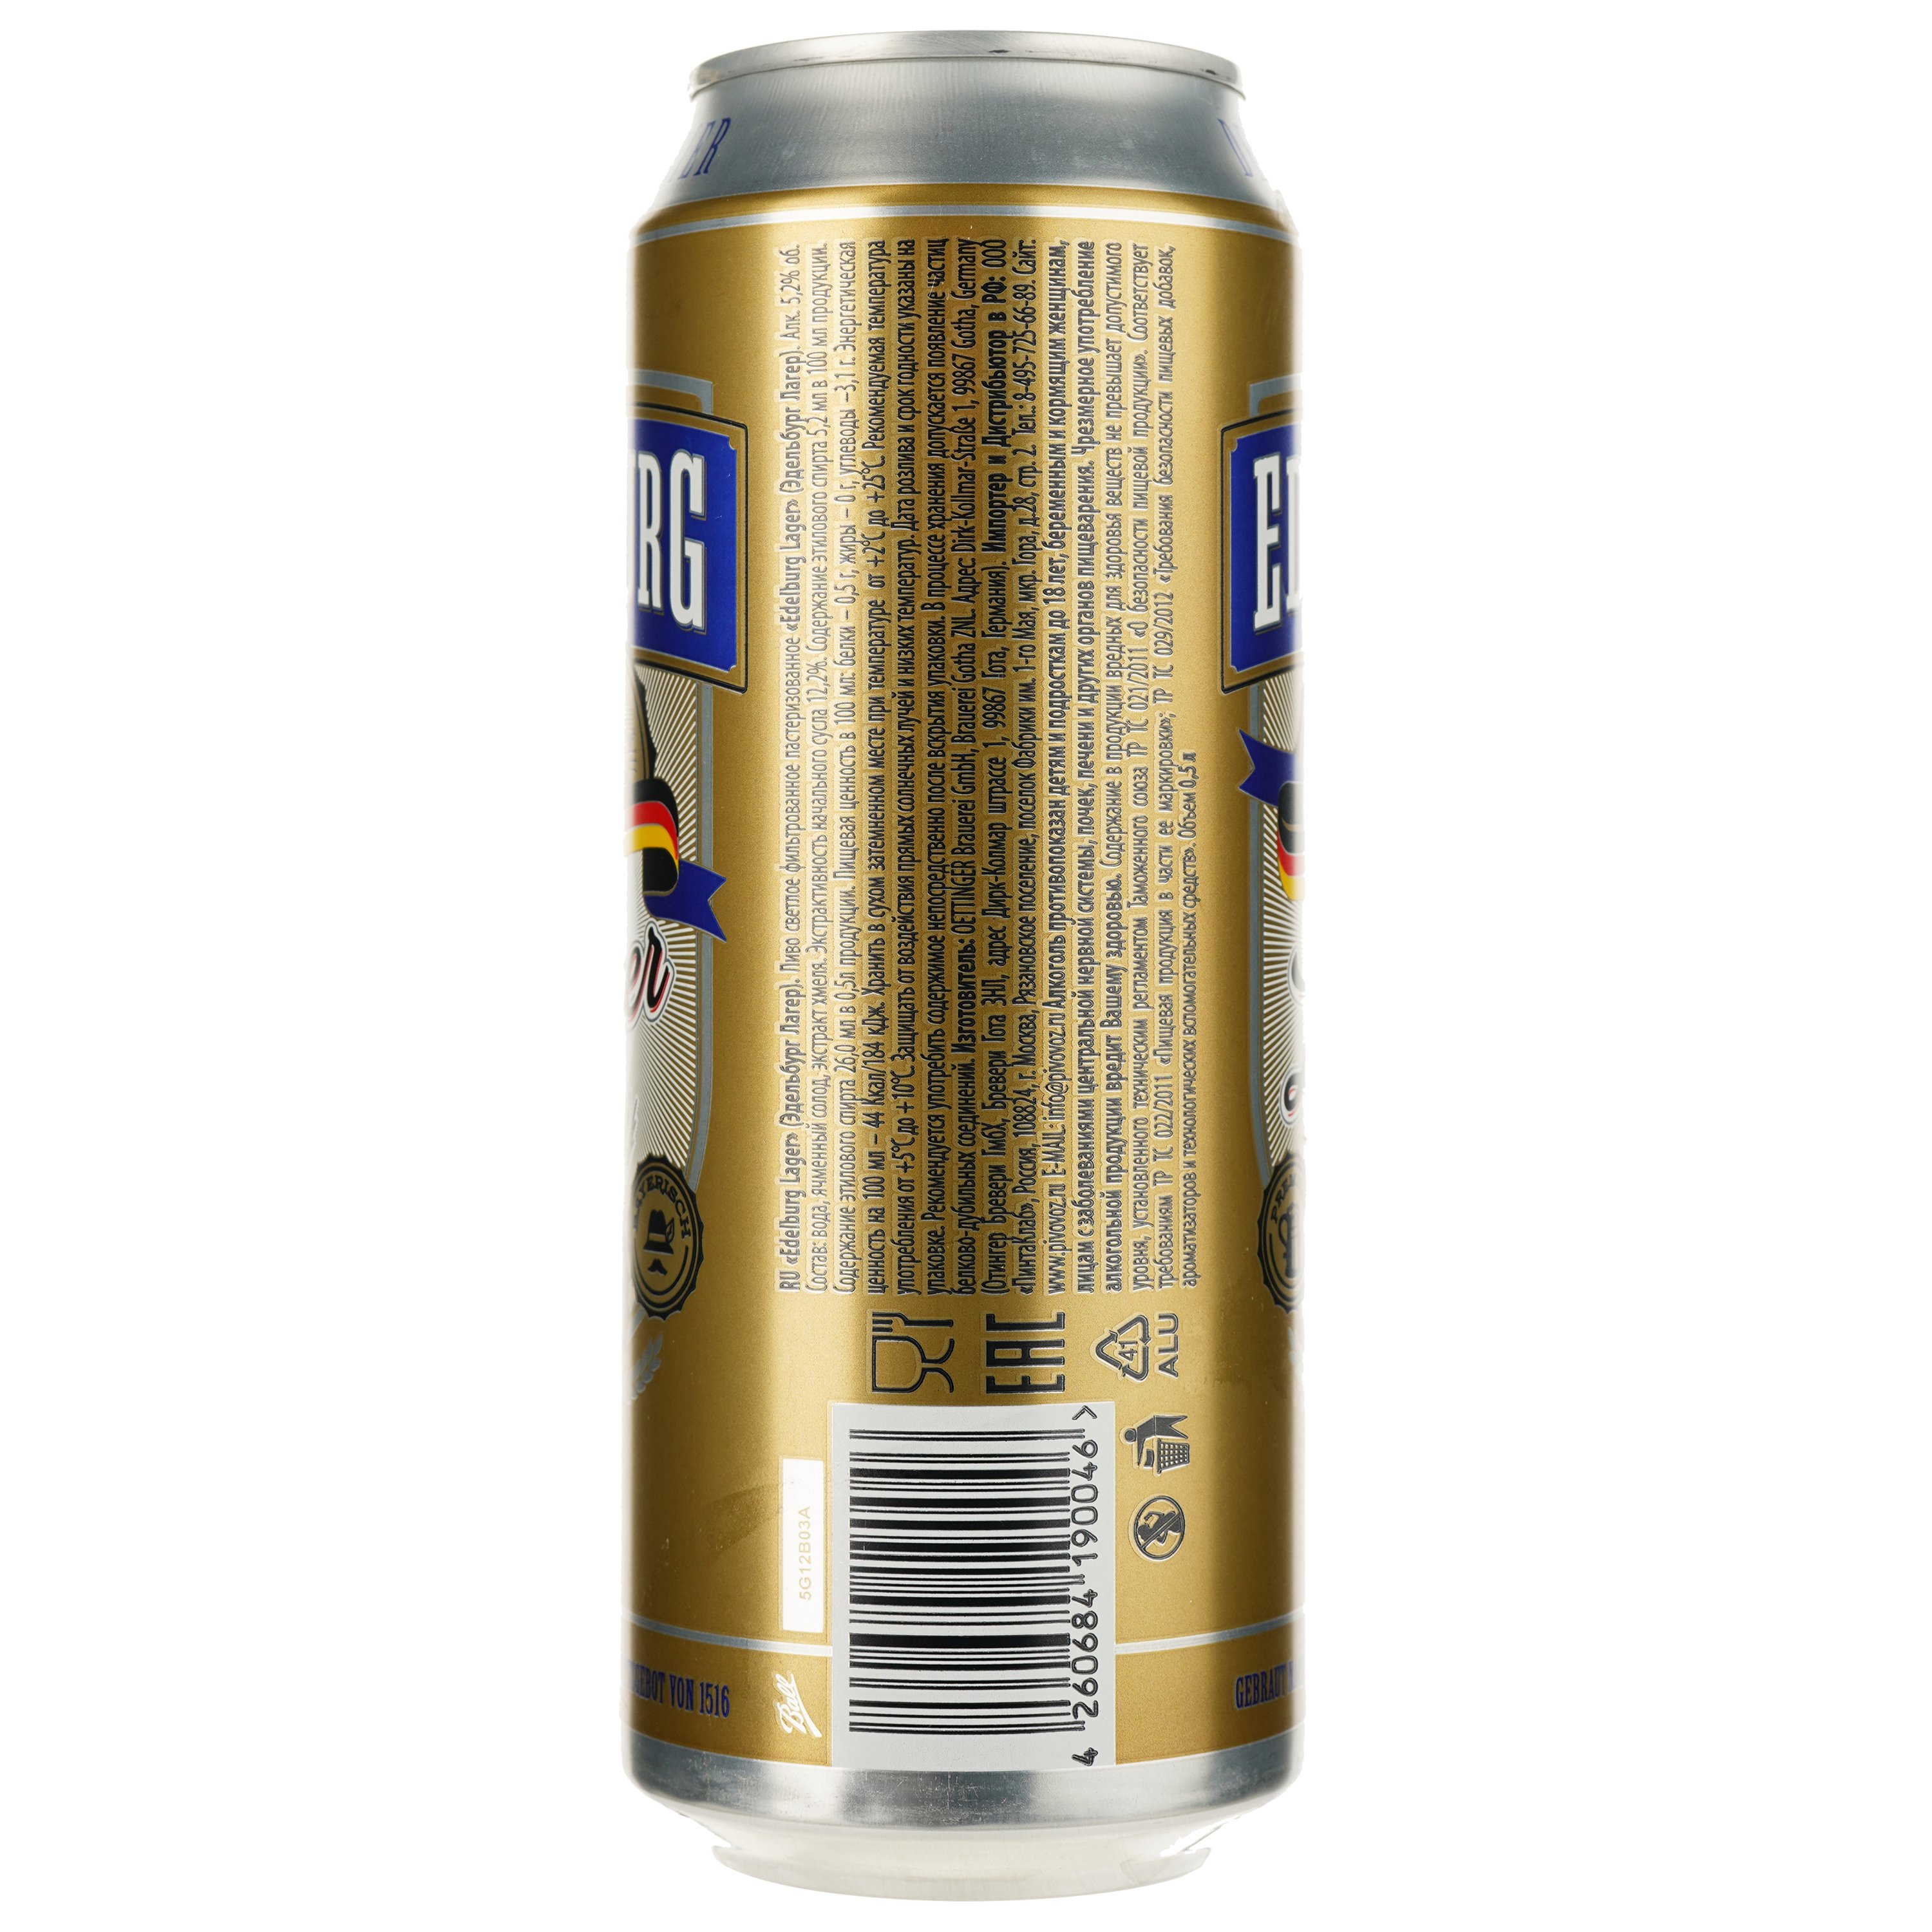 Пиво Edelburg Lager светлое 5.2% 0.5 л ж/б - фото 2